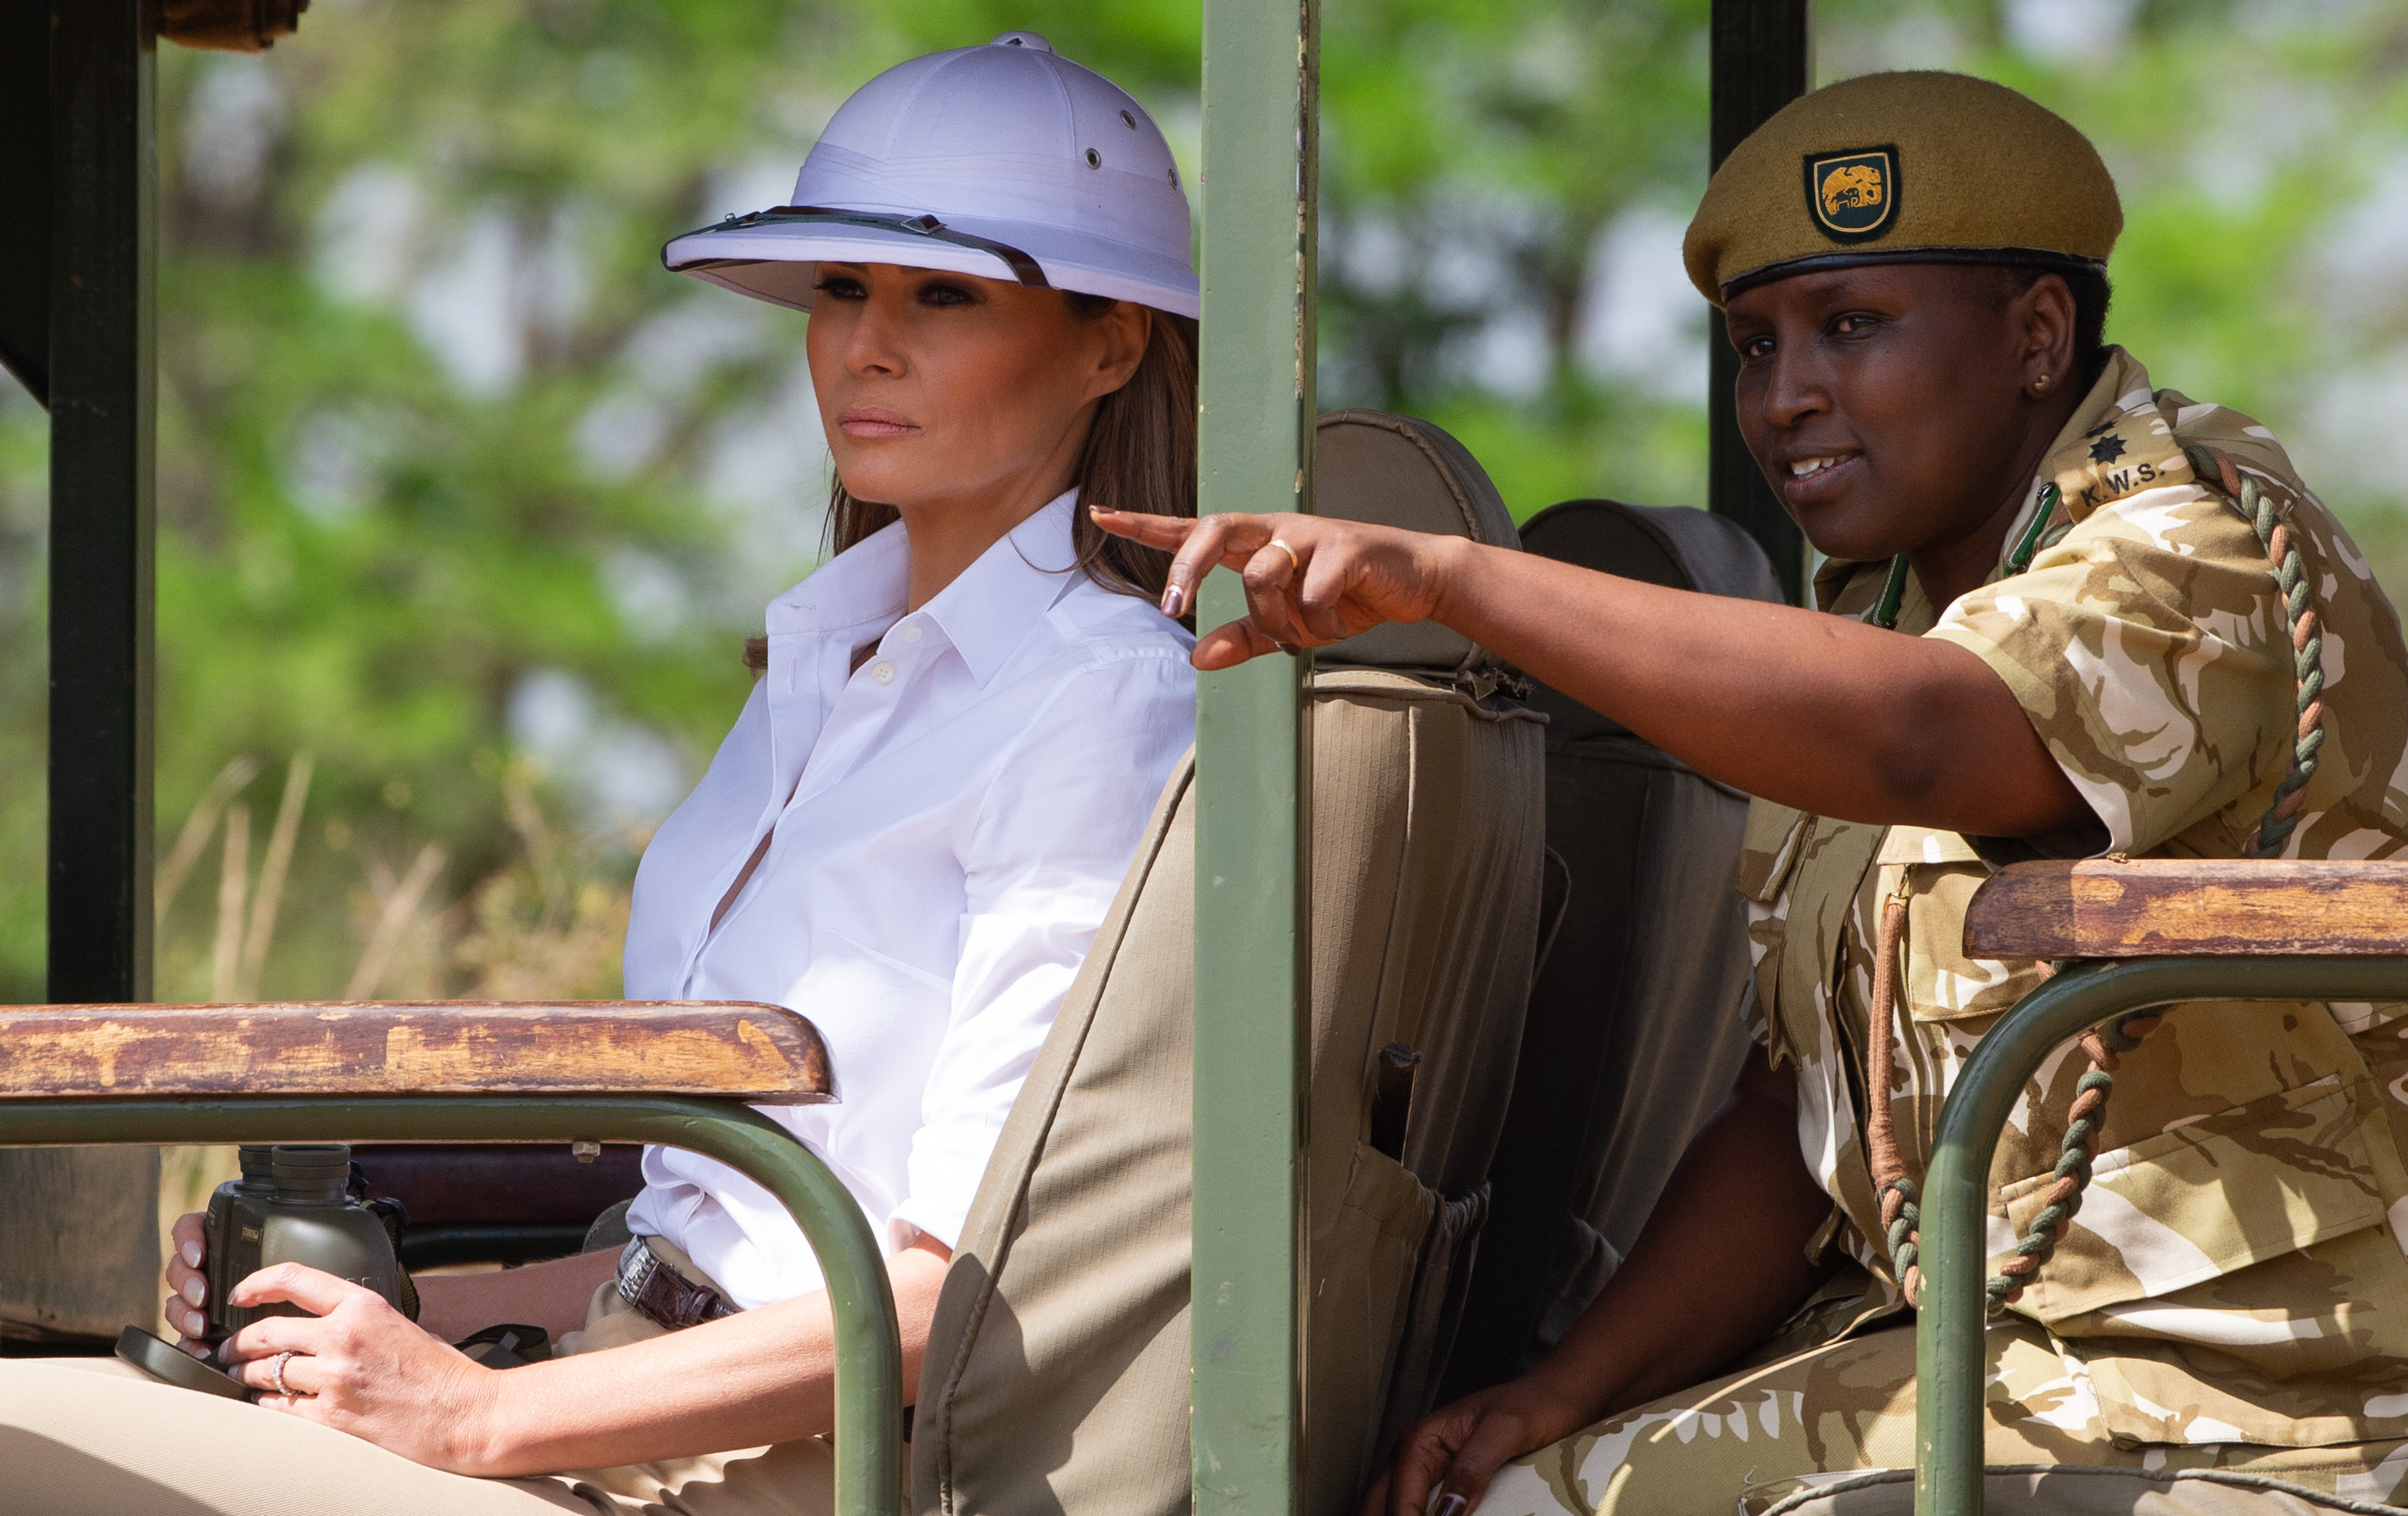 Botrány lett abból, hogy Melania Trump gyarmatosítónak öltözve szafarizott Kenyában